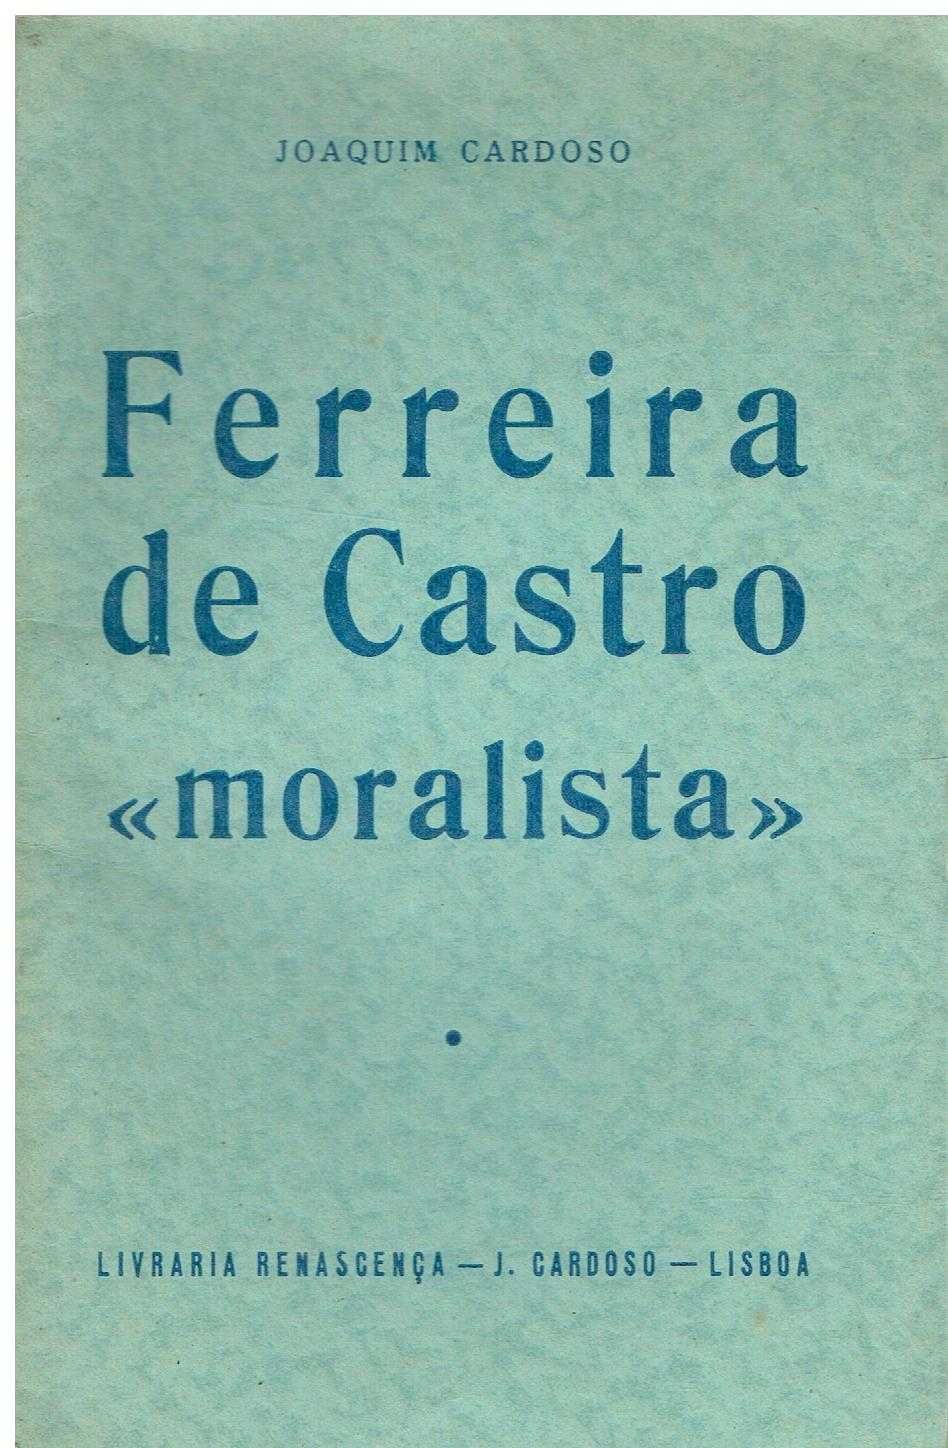 2134 -Ferreira de Castro "moralista" por Joaquim Cardoso/ Autografado